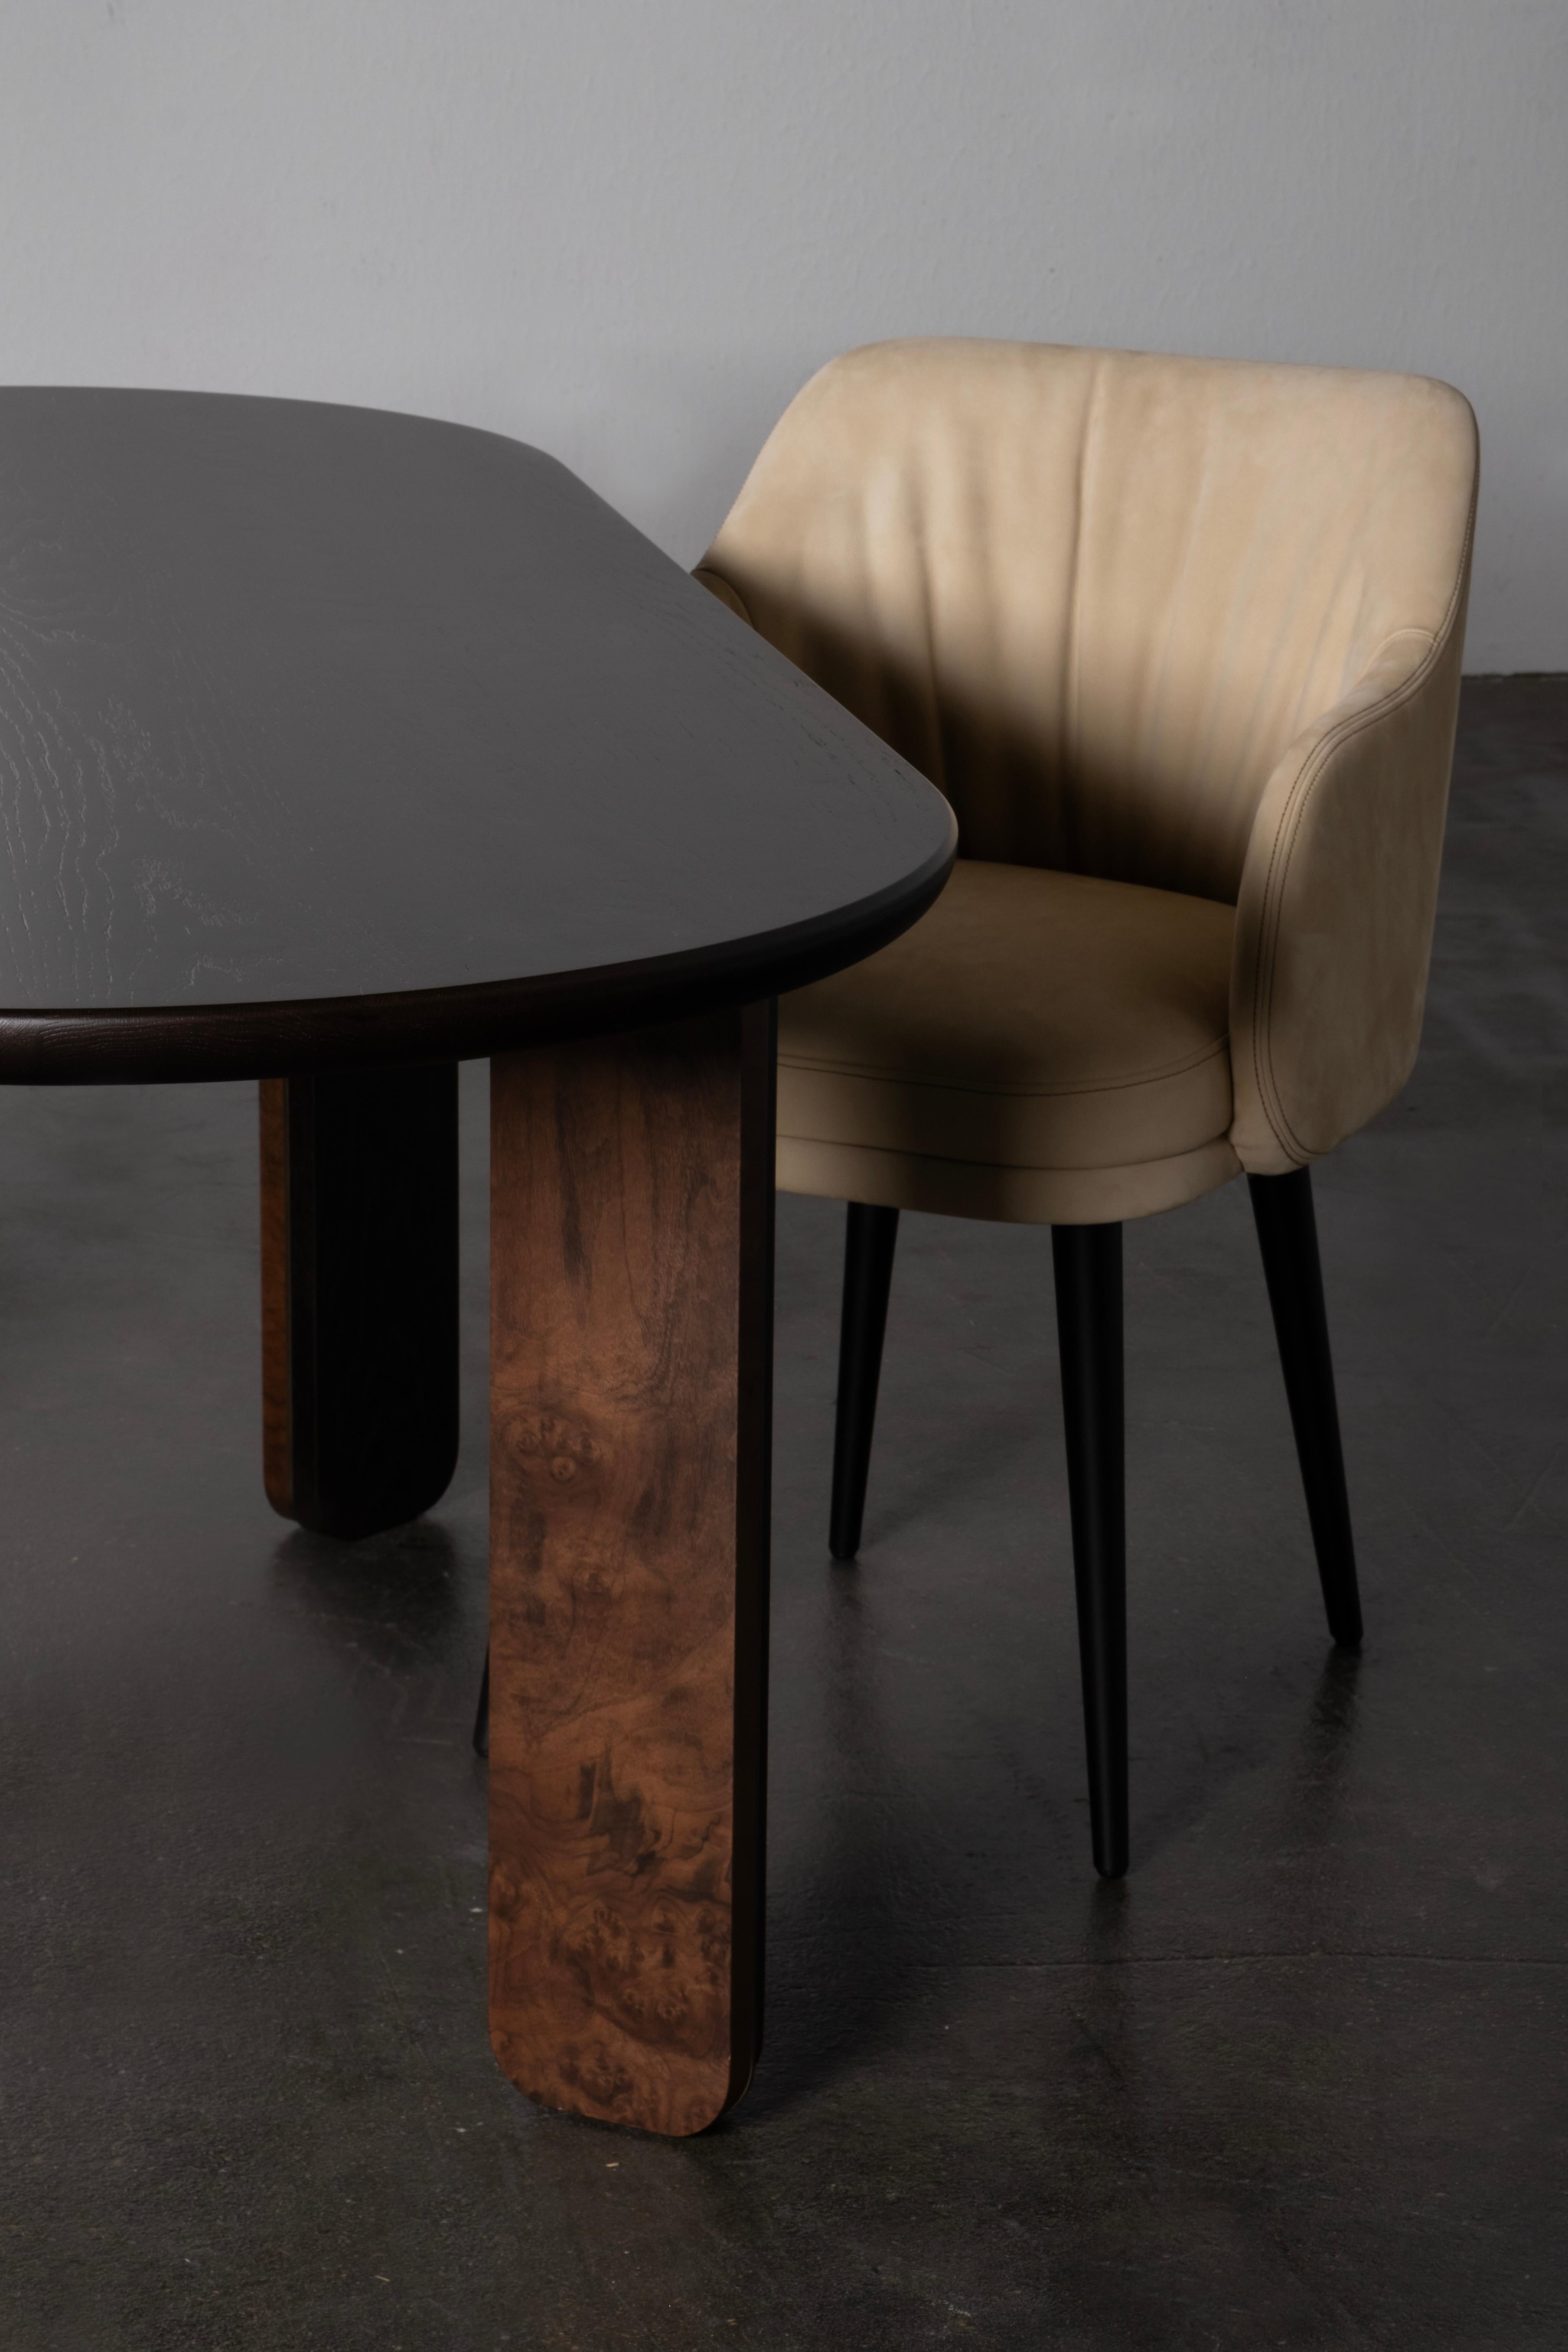 Chaise Margot, Collection S, fabriqué à la main au Portugal - Europe par GF Modern.

La chaise de salle à manger en cuir Margot est une pièce contemporaine qui redéfinit les normes de la vie moderne. L'interaction de lignes douces et gracieuses et